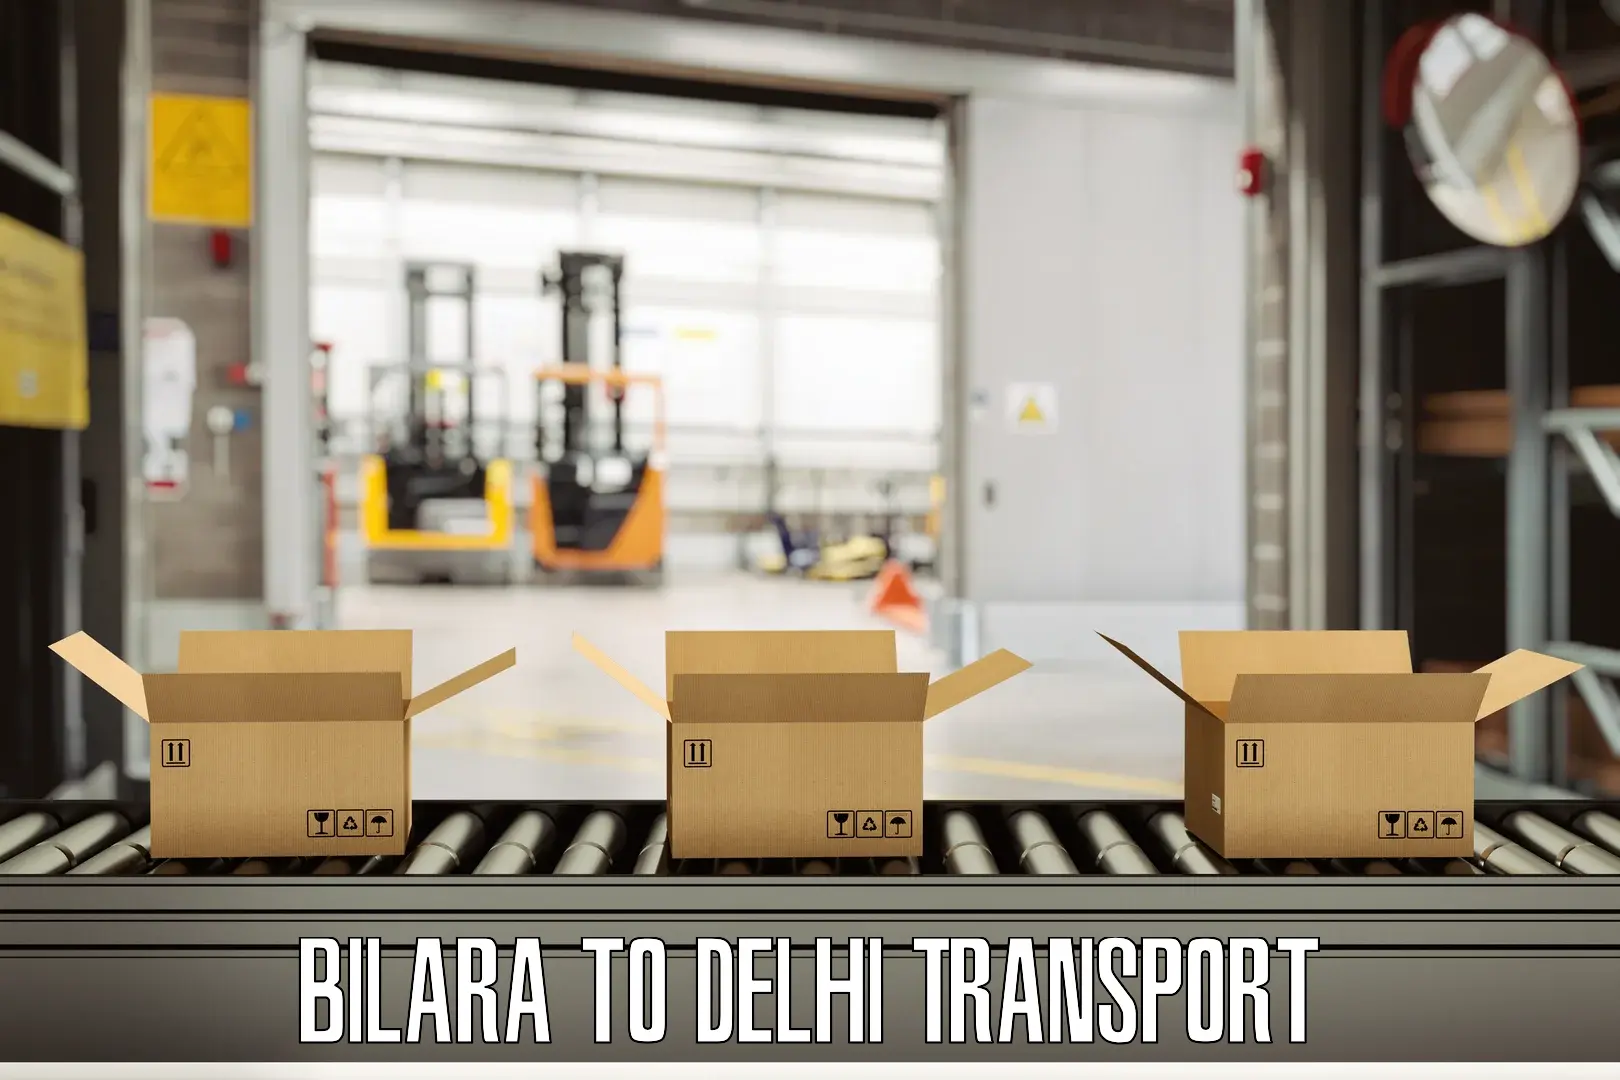 Bike transport service in Bilara to Delhi